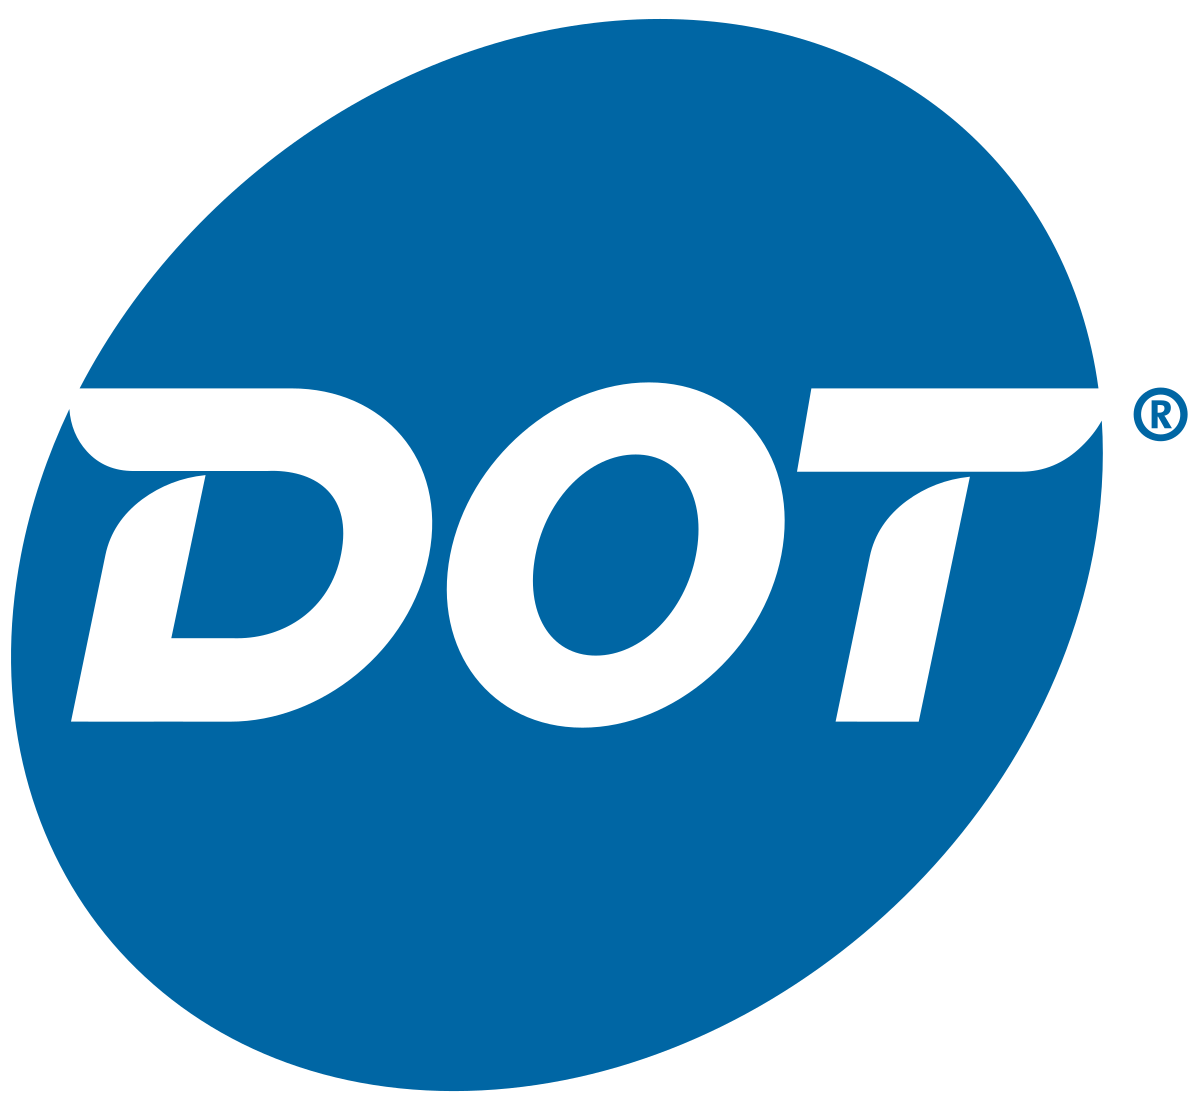 D.   Dot Foods (Tier 4)